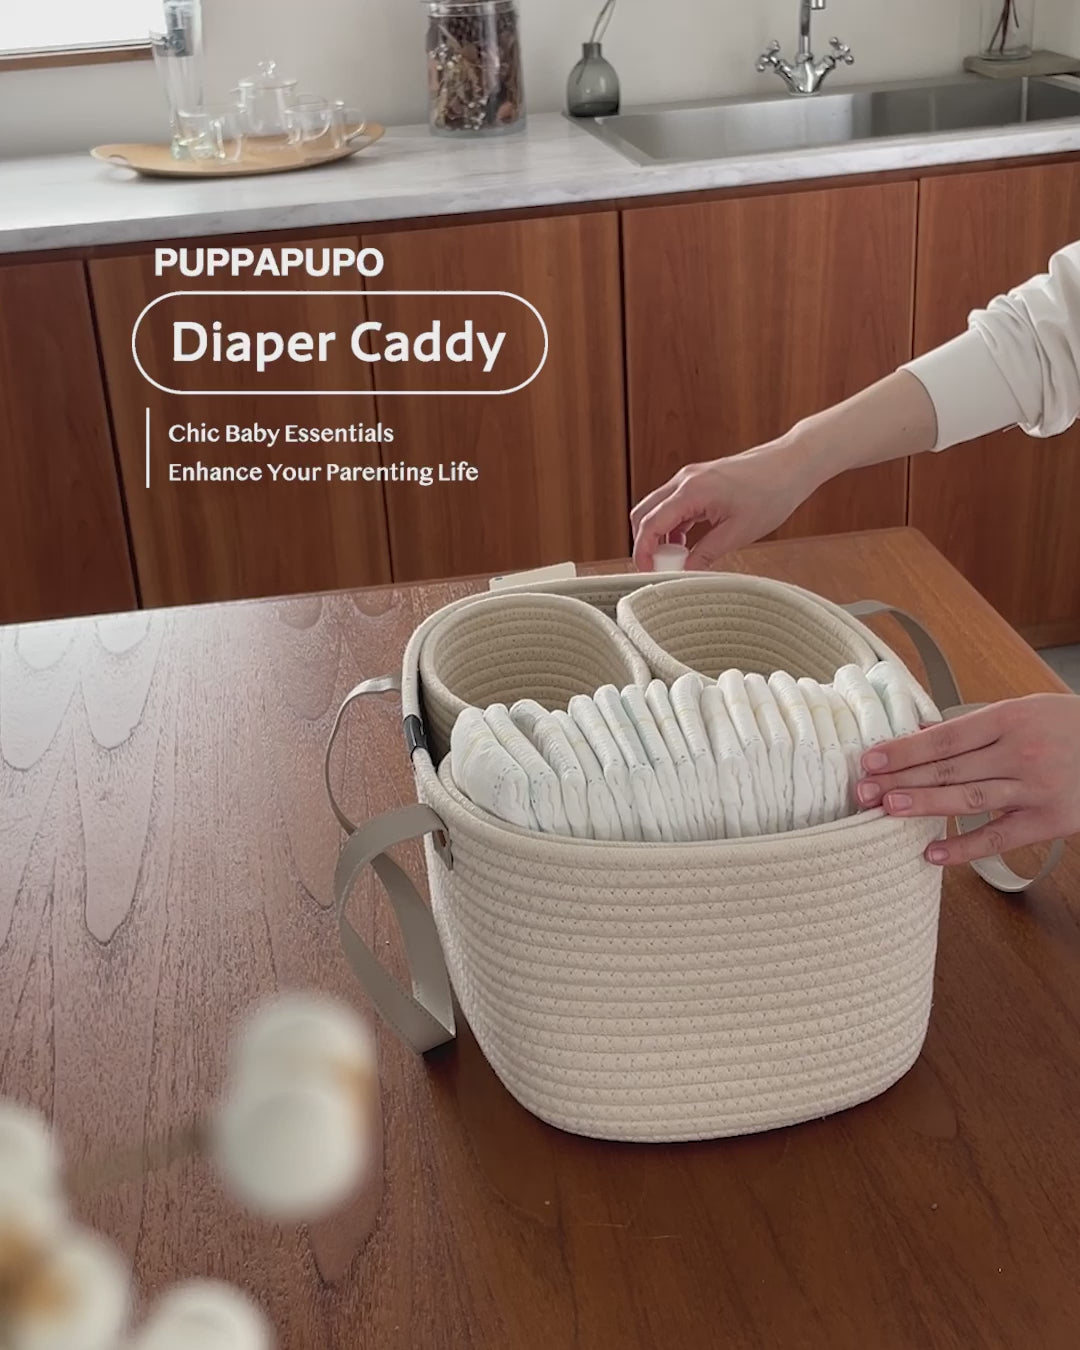 Diaper caddy